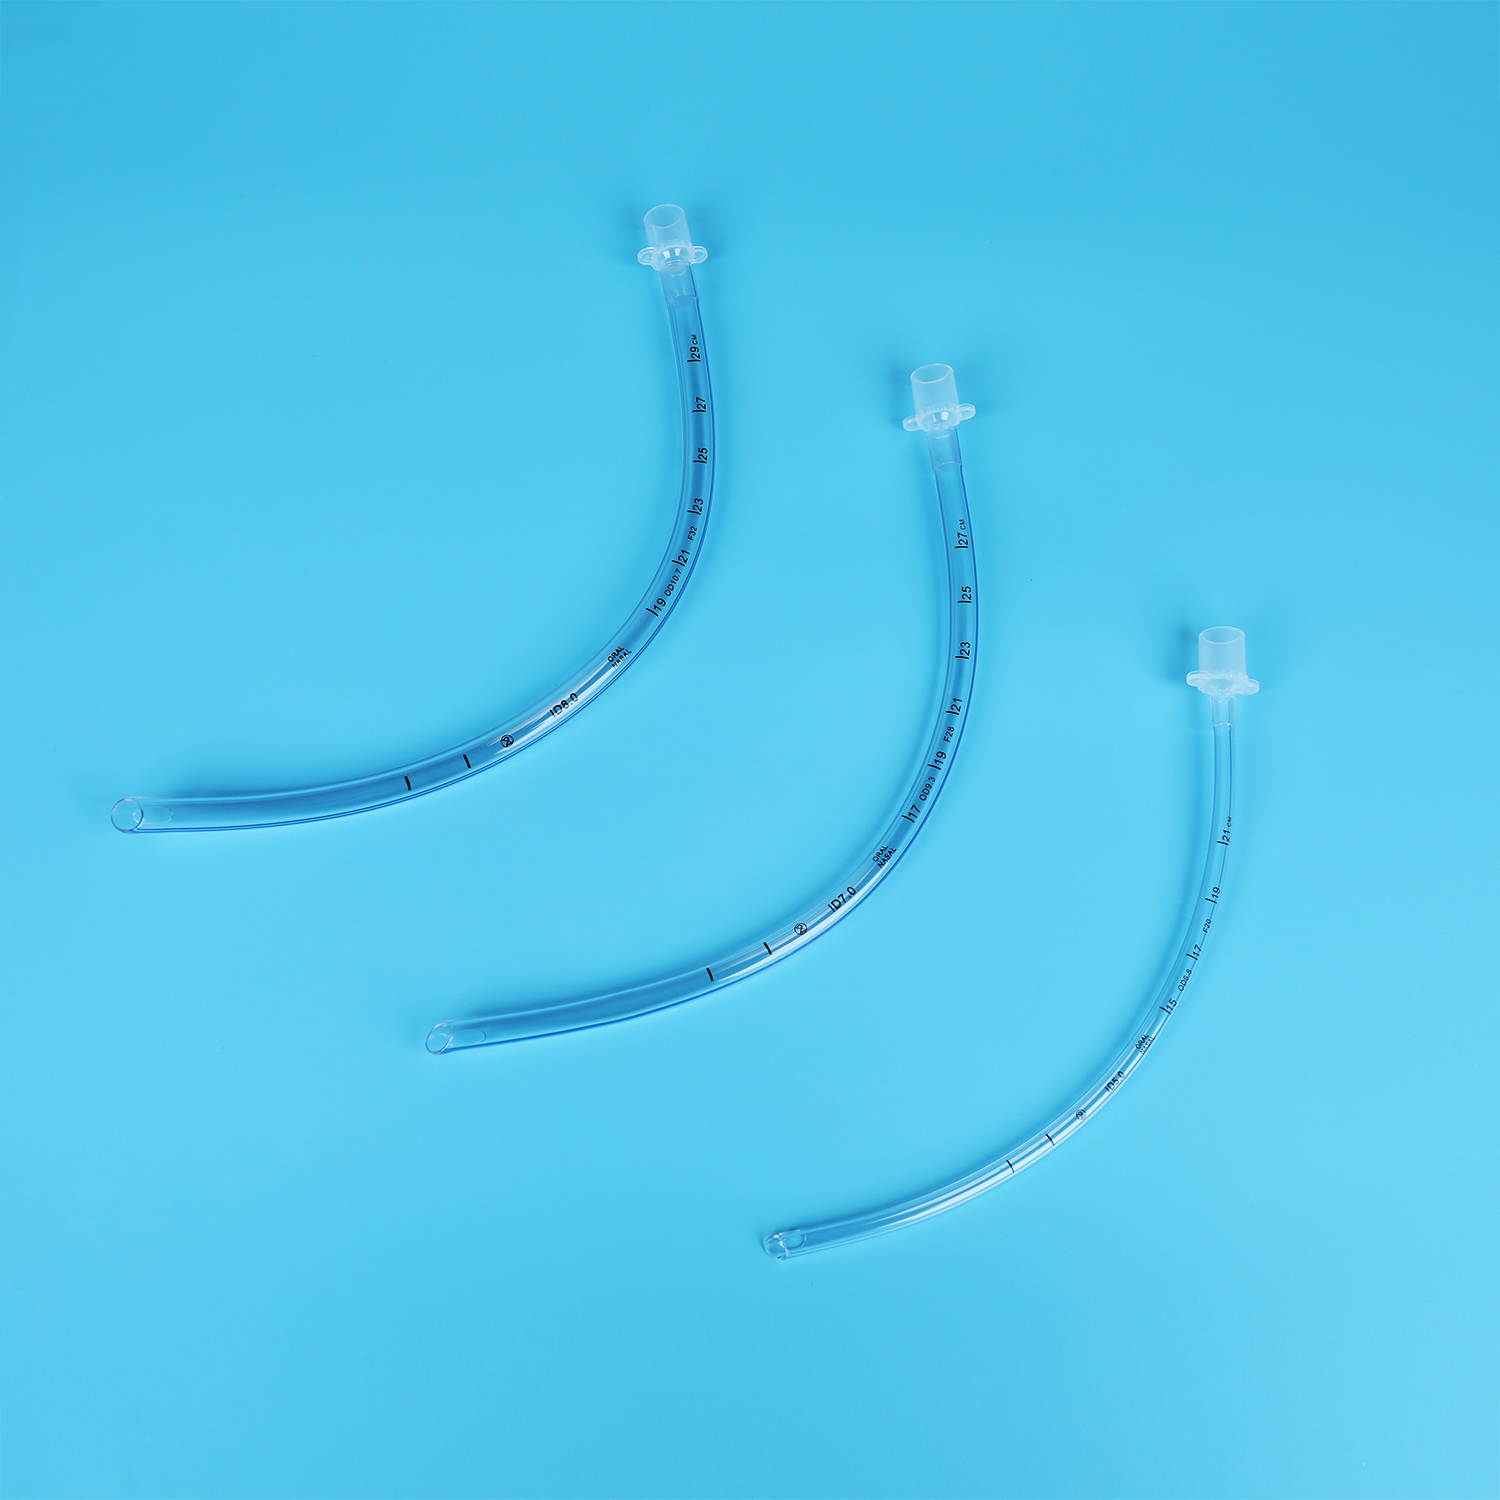 ໂຮງງານຜະລິດມາດຕະຖານປະເທດຈີນໂດຍບໍ່ມີການ Cuff Endotracheal Tube Tracheal ສະຫນອງໂດຍກົງ Flexible Soft Tip Airway Tube Tracheal Catheter Mdical ວັດສະດຸທັງຫມົດຂາຍຈີນ